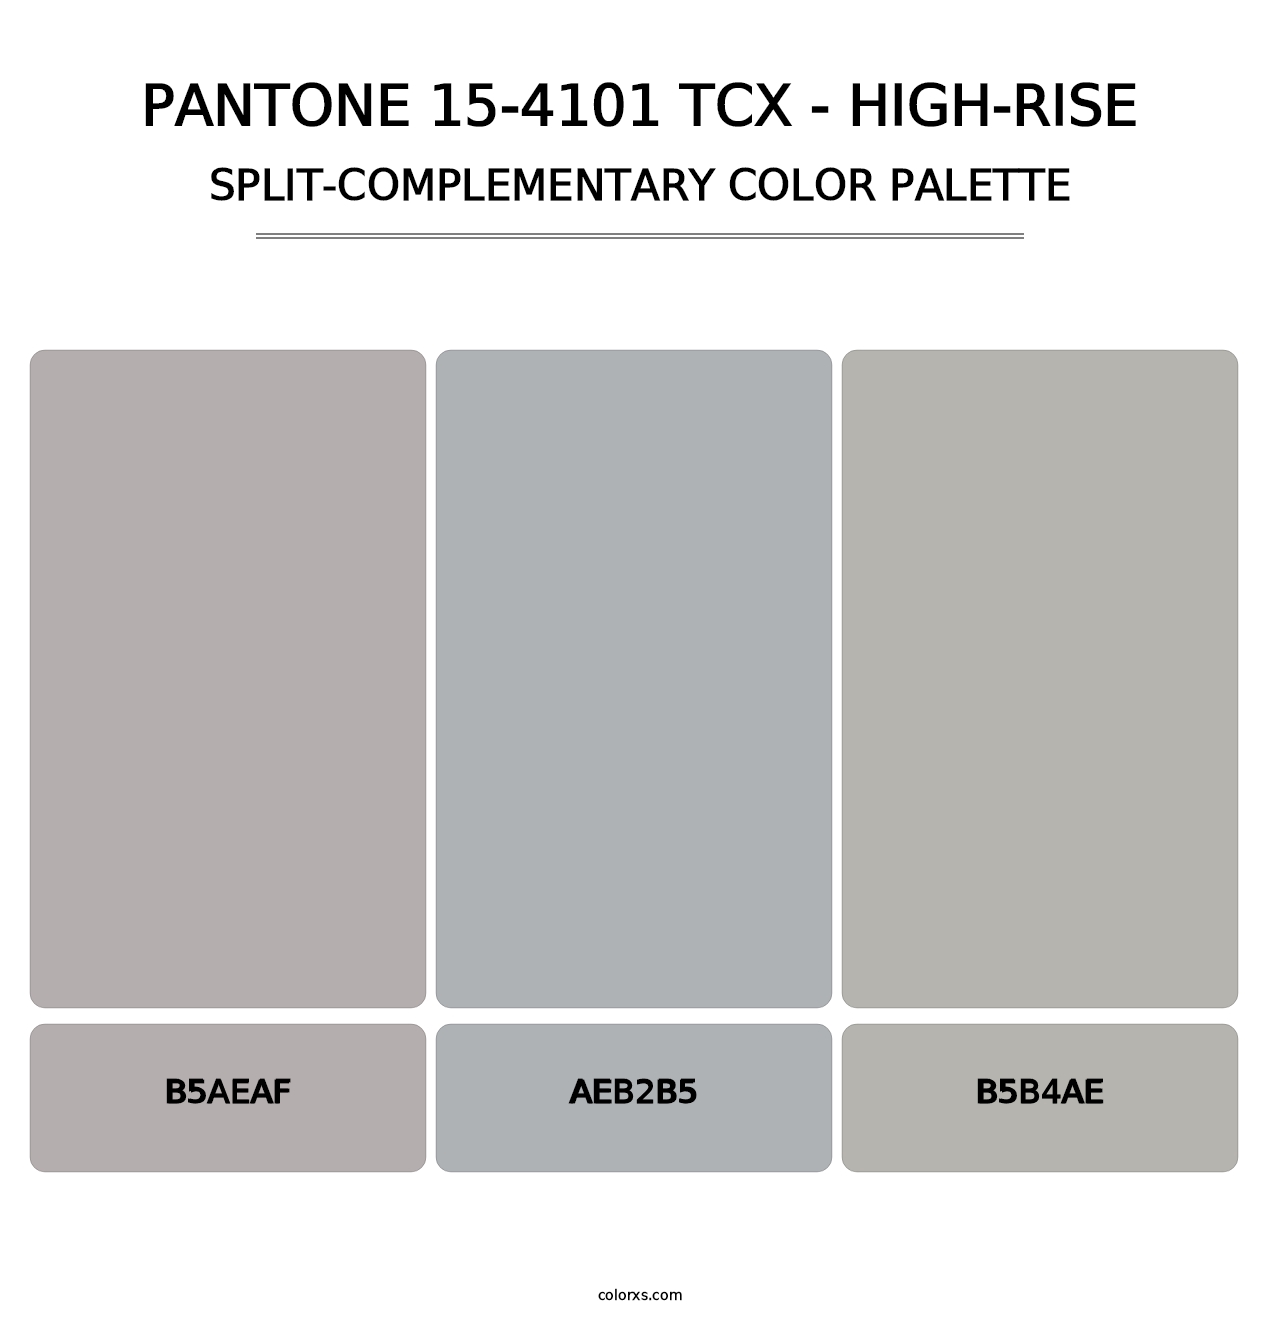 PANTONE 15-4101 TCX - High-rise - Split-Complementary Color Palette